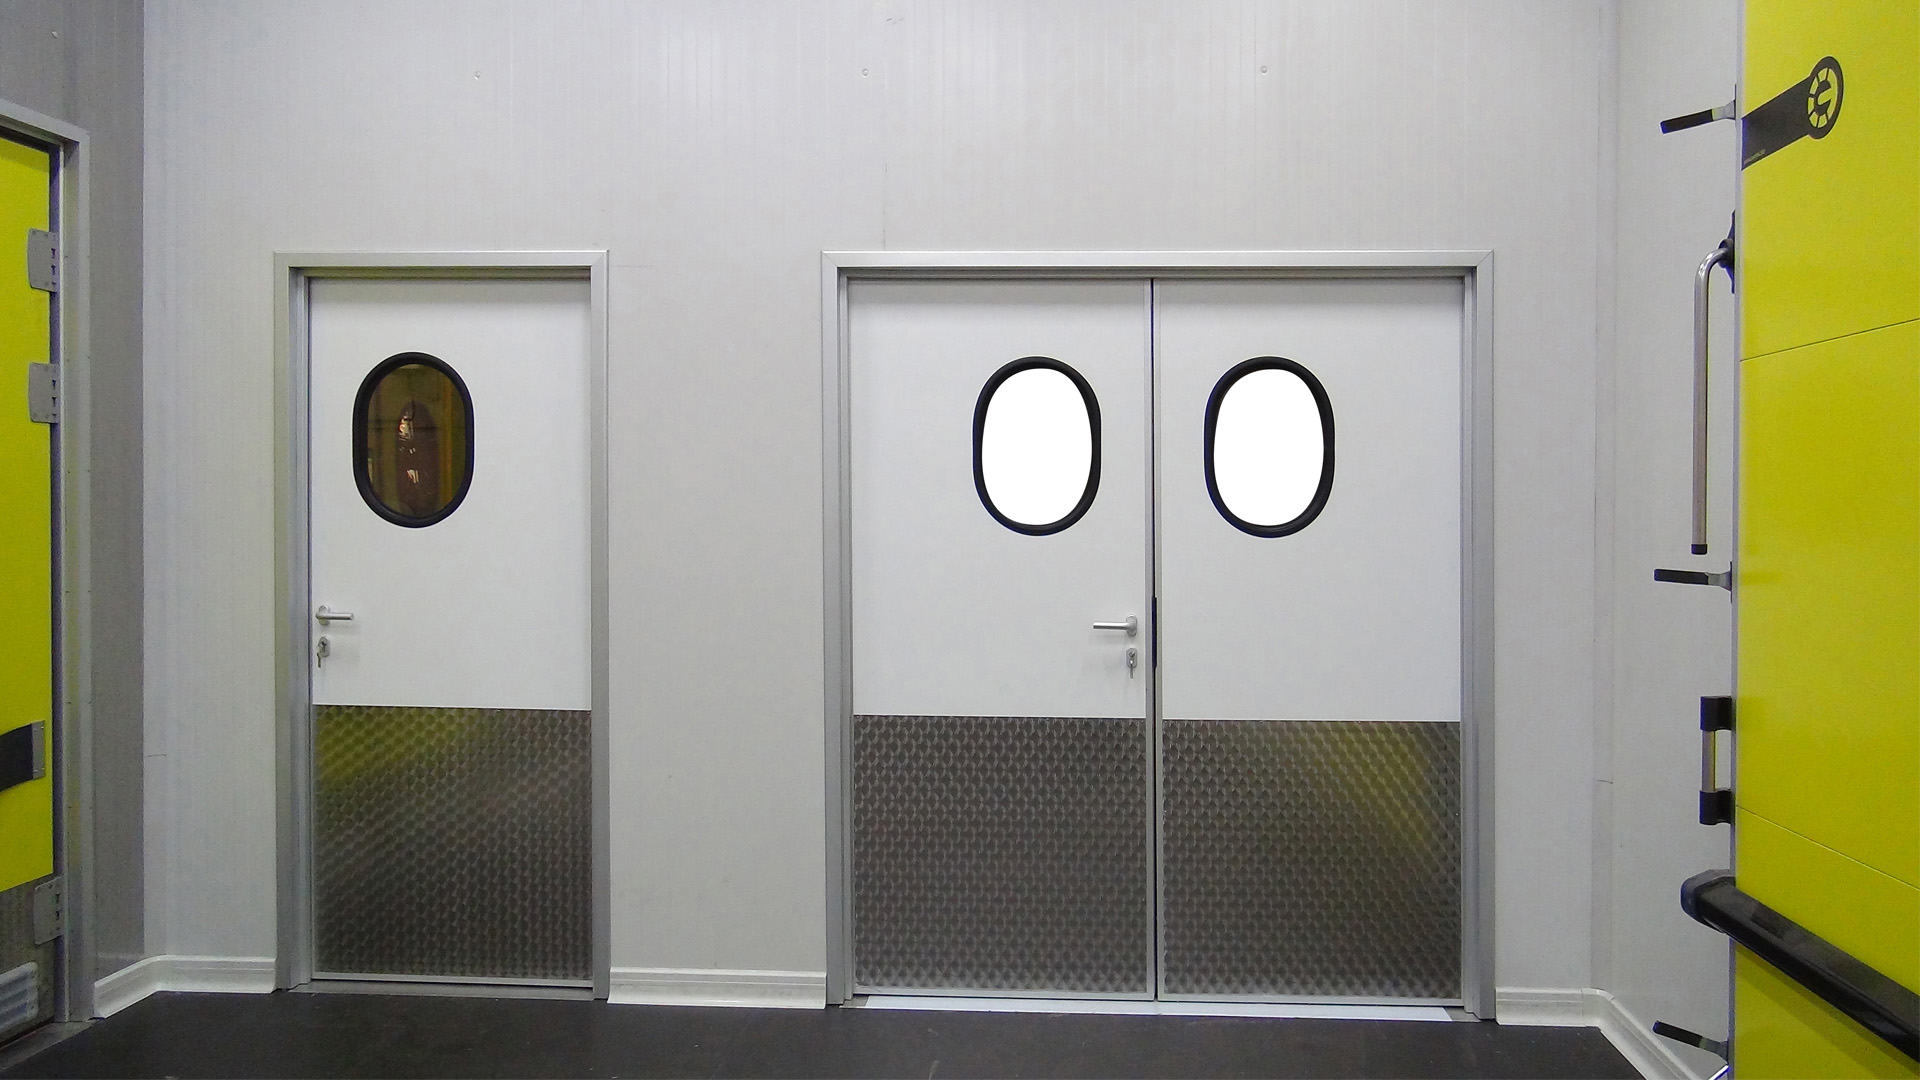 Protecciones industriales de PVC protegen la puerta de cuarto frío